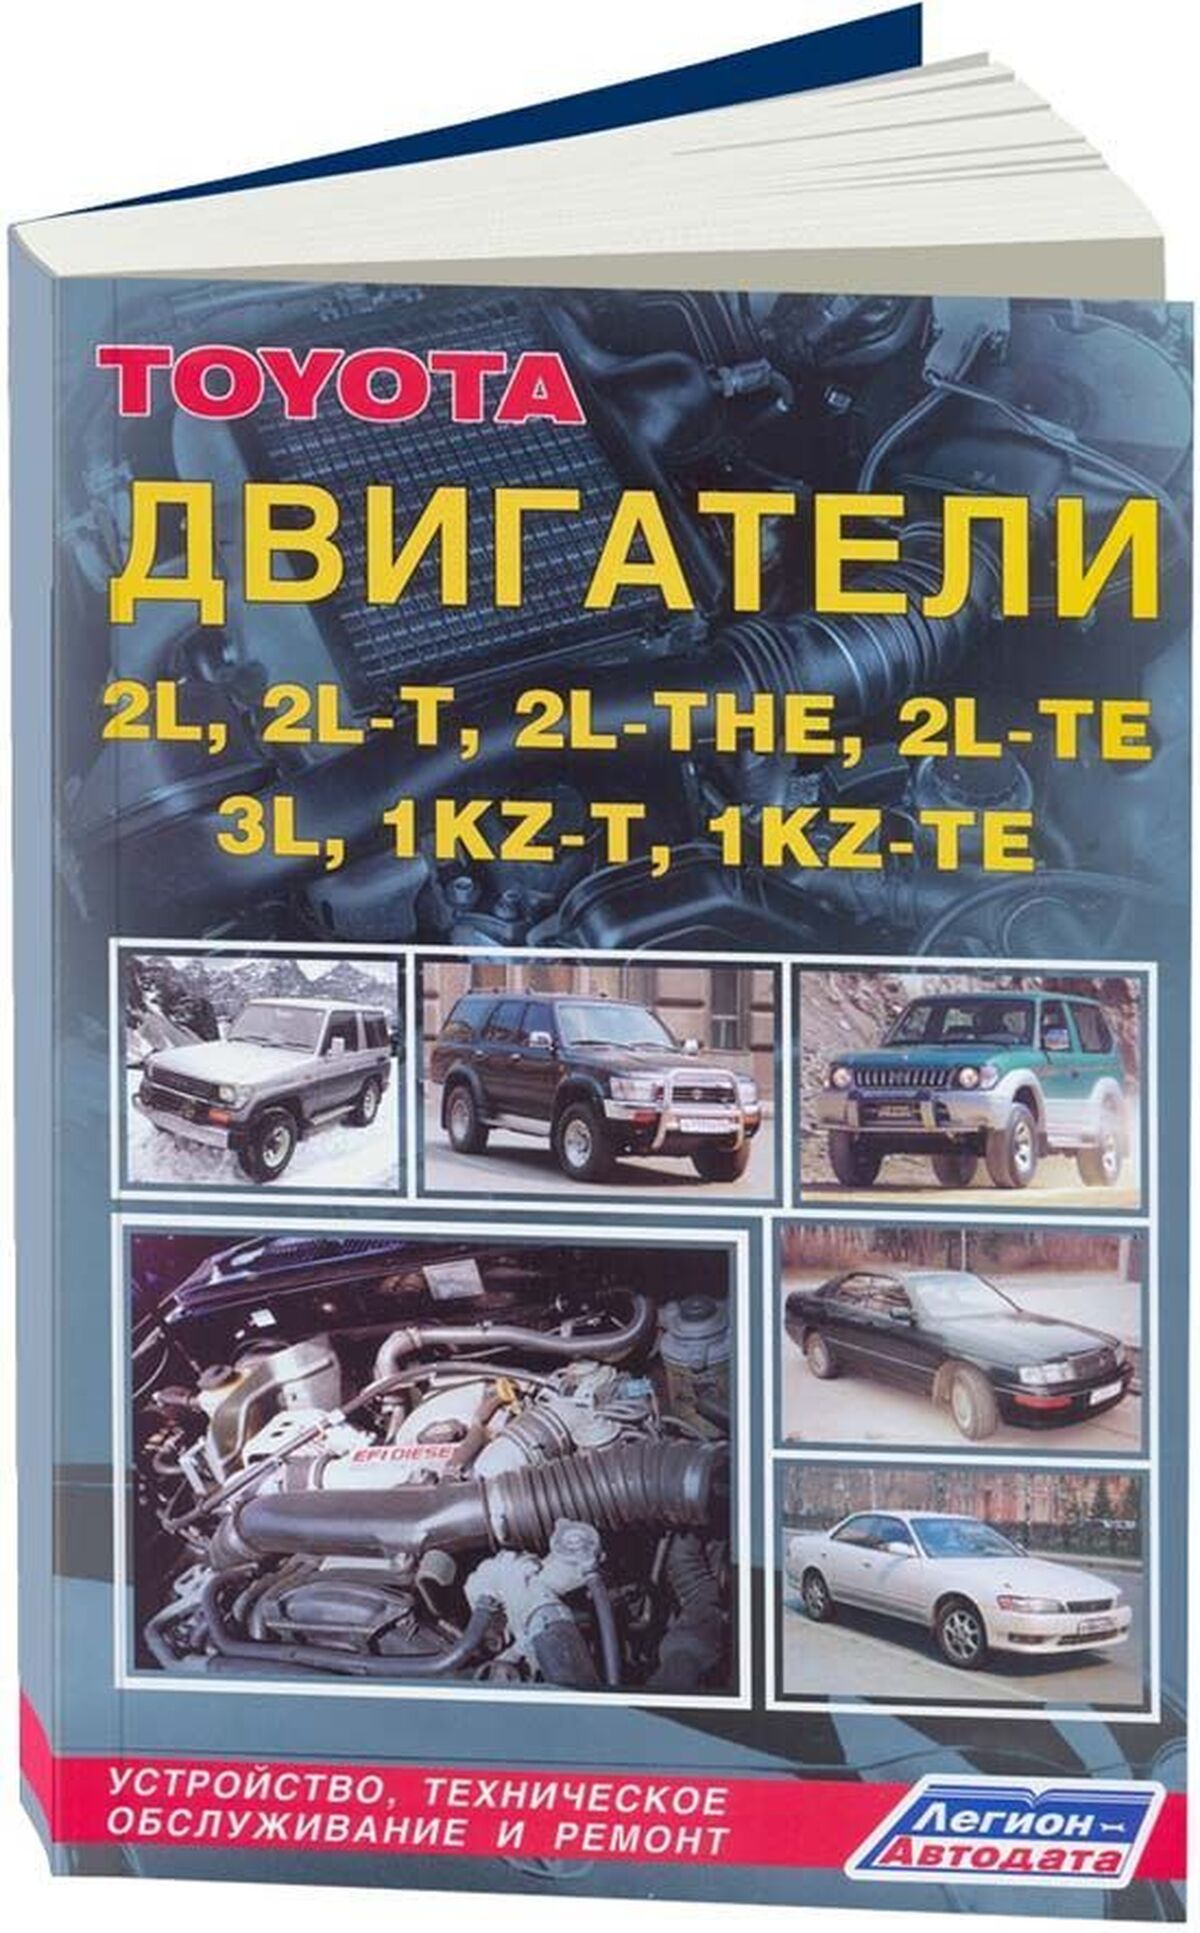 Книга: Двигатели TOYOTA 2L / 2L-T / 2L-THE / 2L-TE / 3L / 1KZ-T / 1KZ-TE рем., то | Легион-Aвтодата